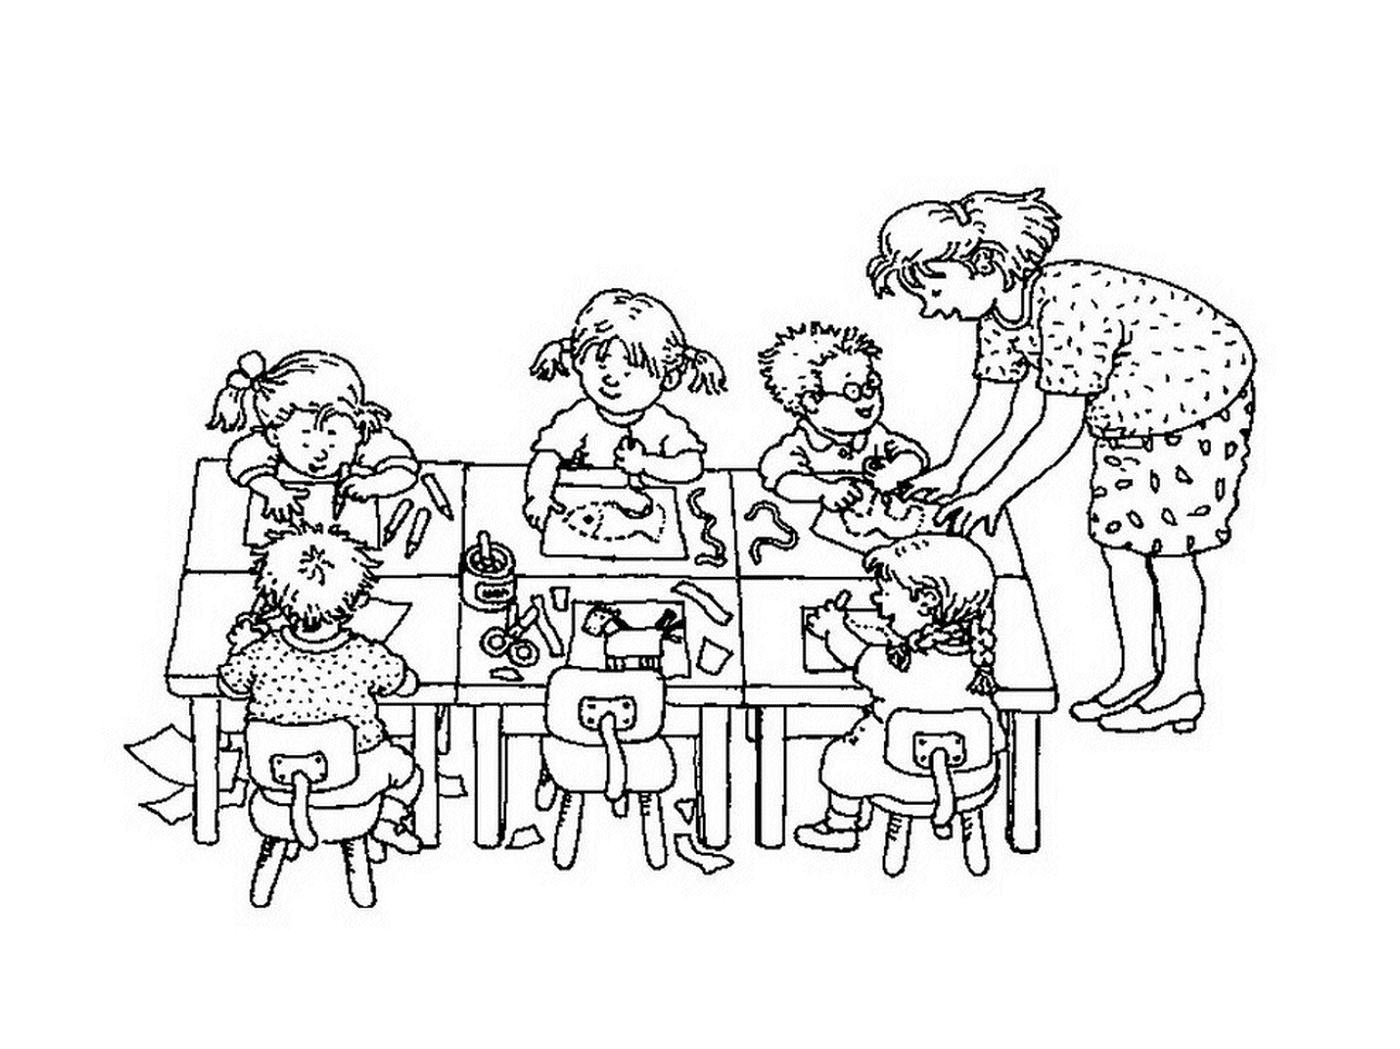  Un maestro y sus alumnos sentados en una mesa 